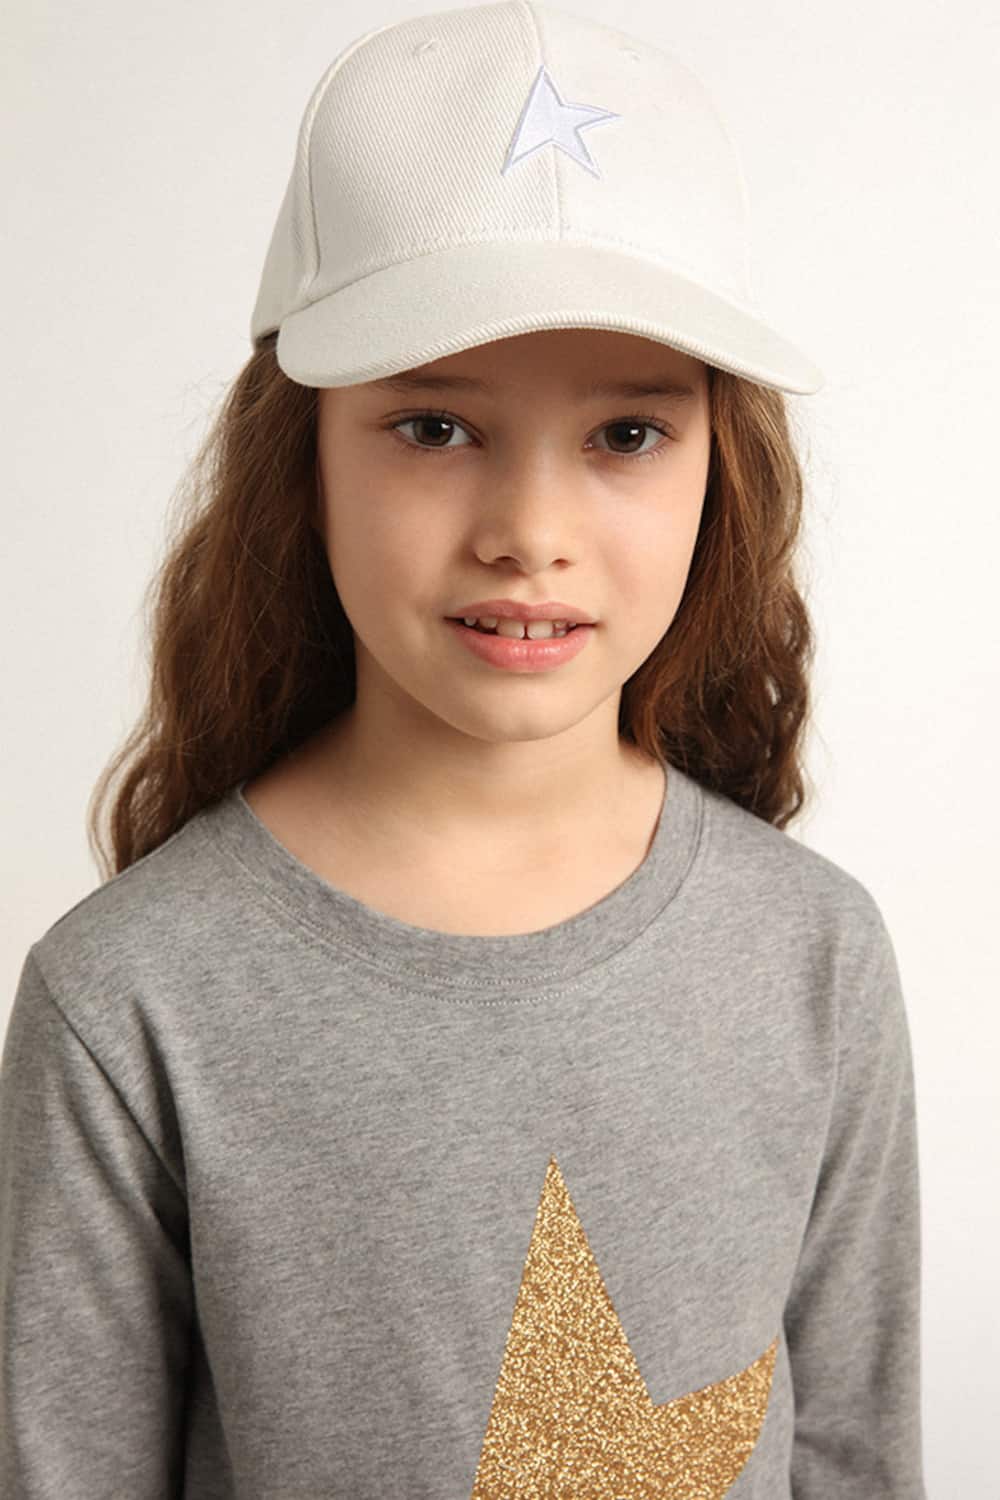 Golden Goose - Cappellino da baseball di colore bianco da bambino con stella in 